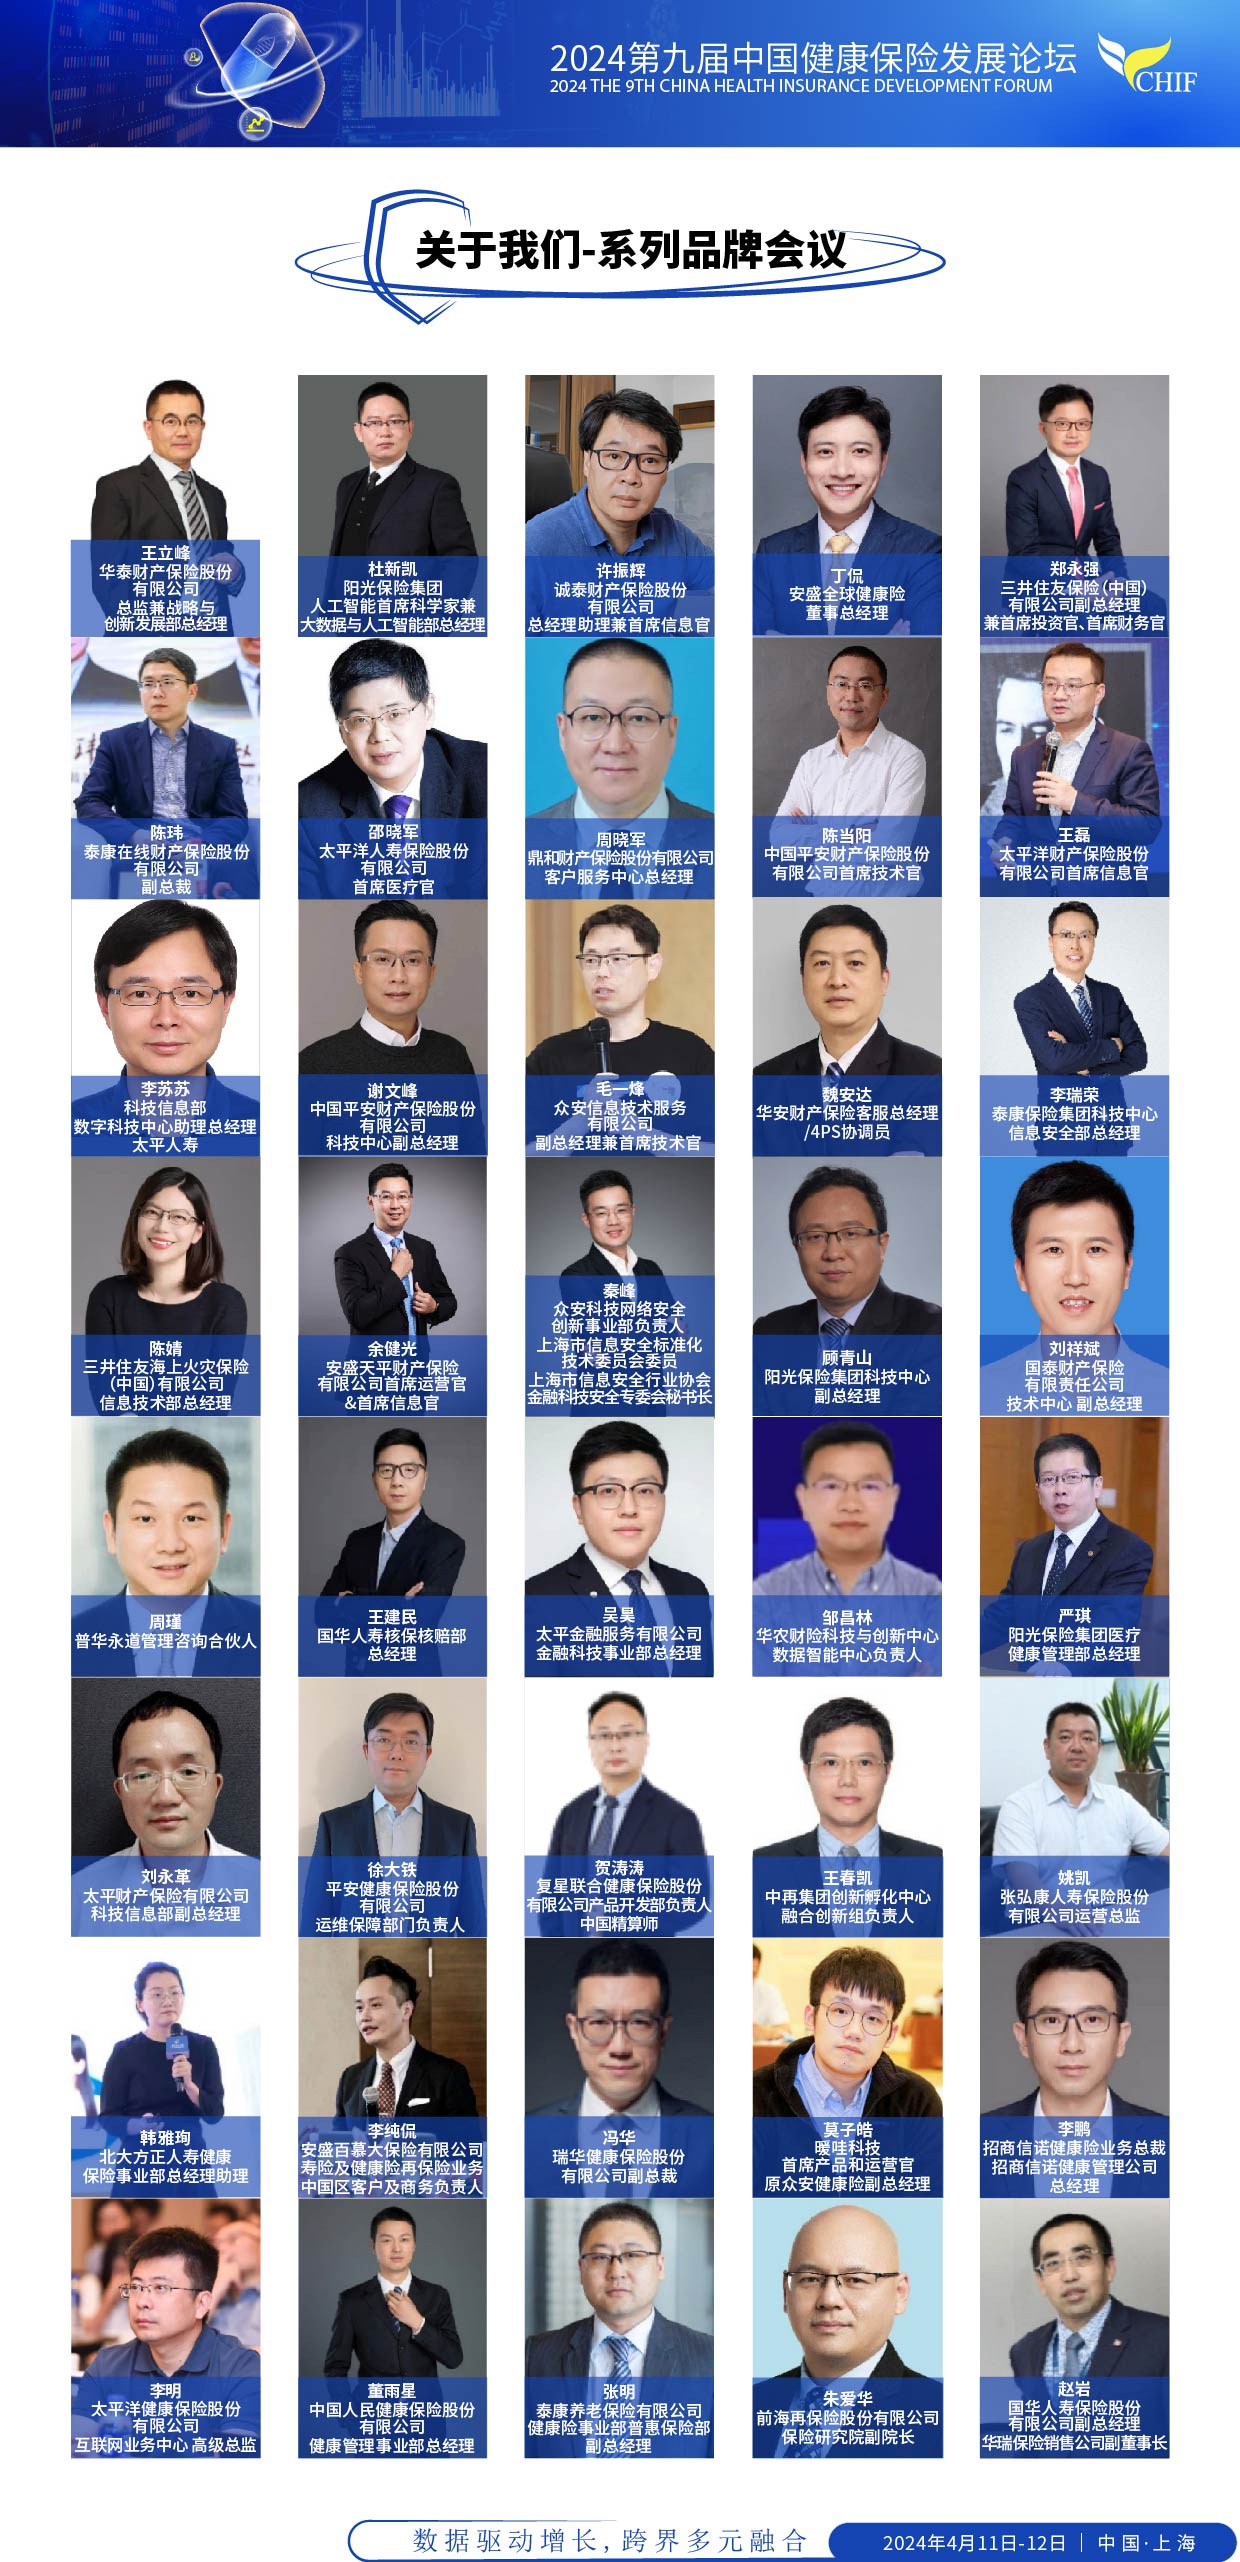 2024第九届中国健康保险发展论坛